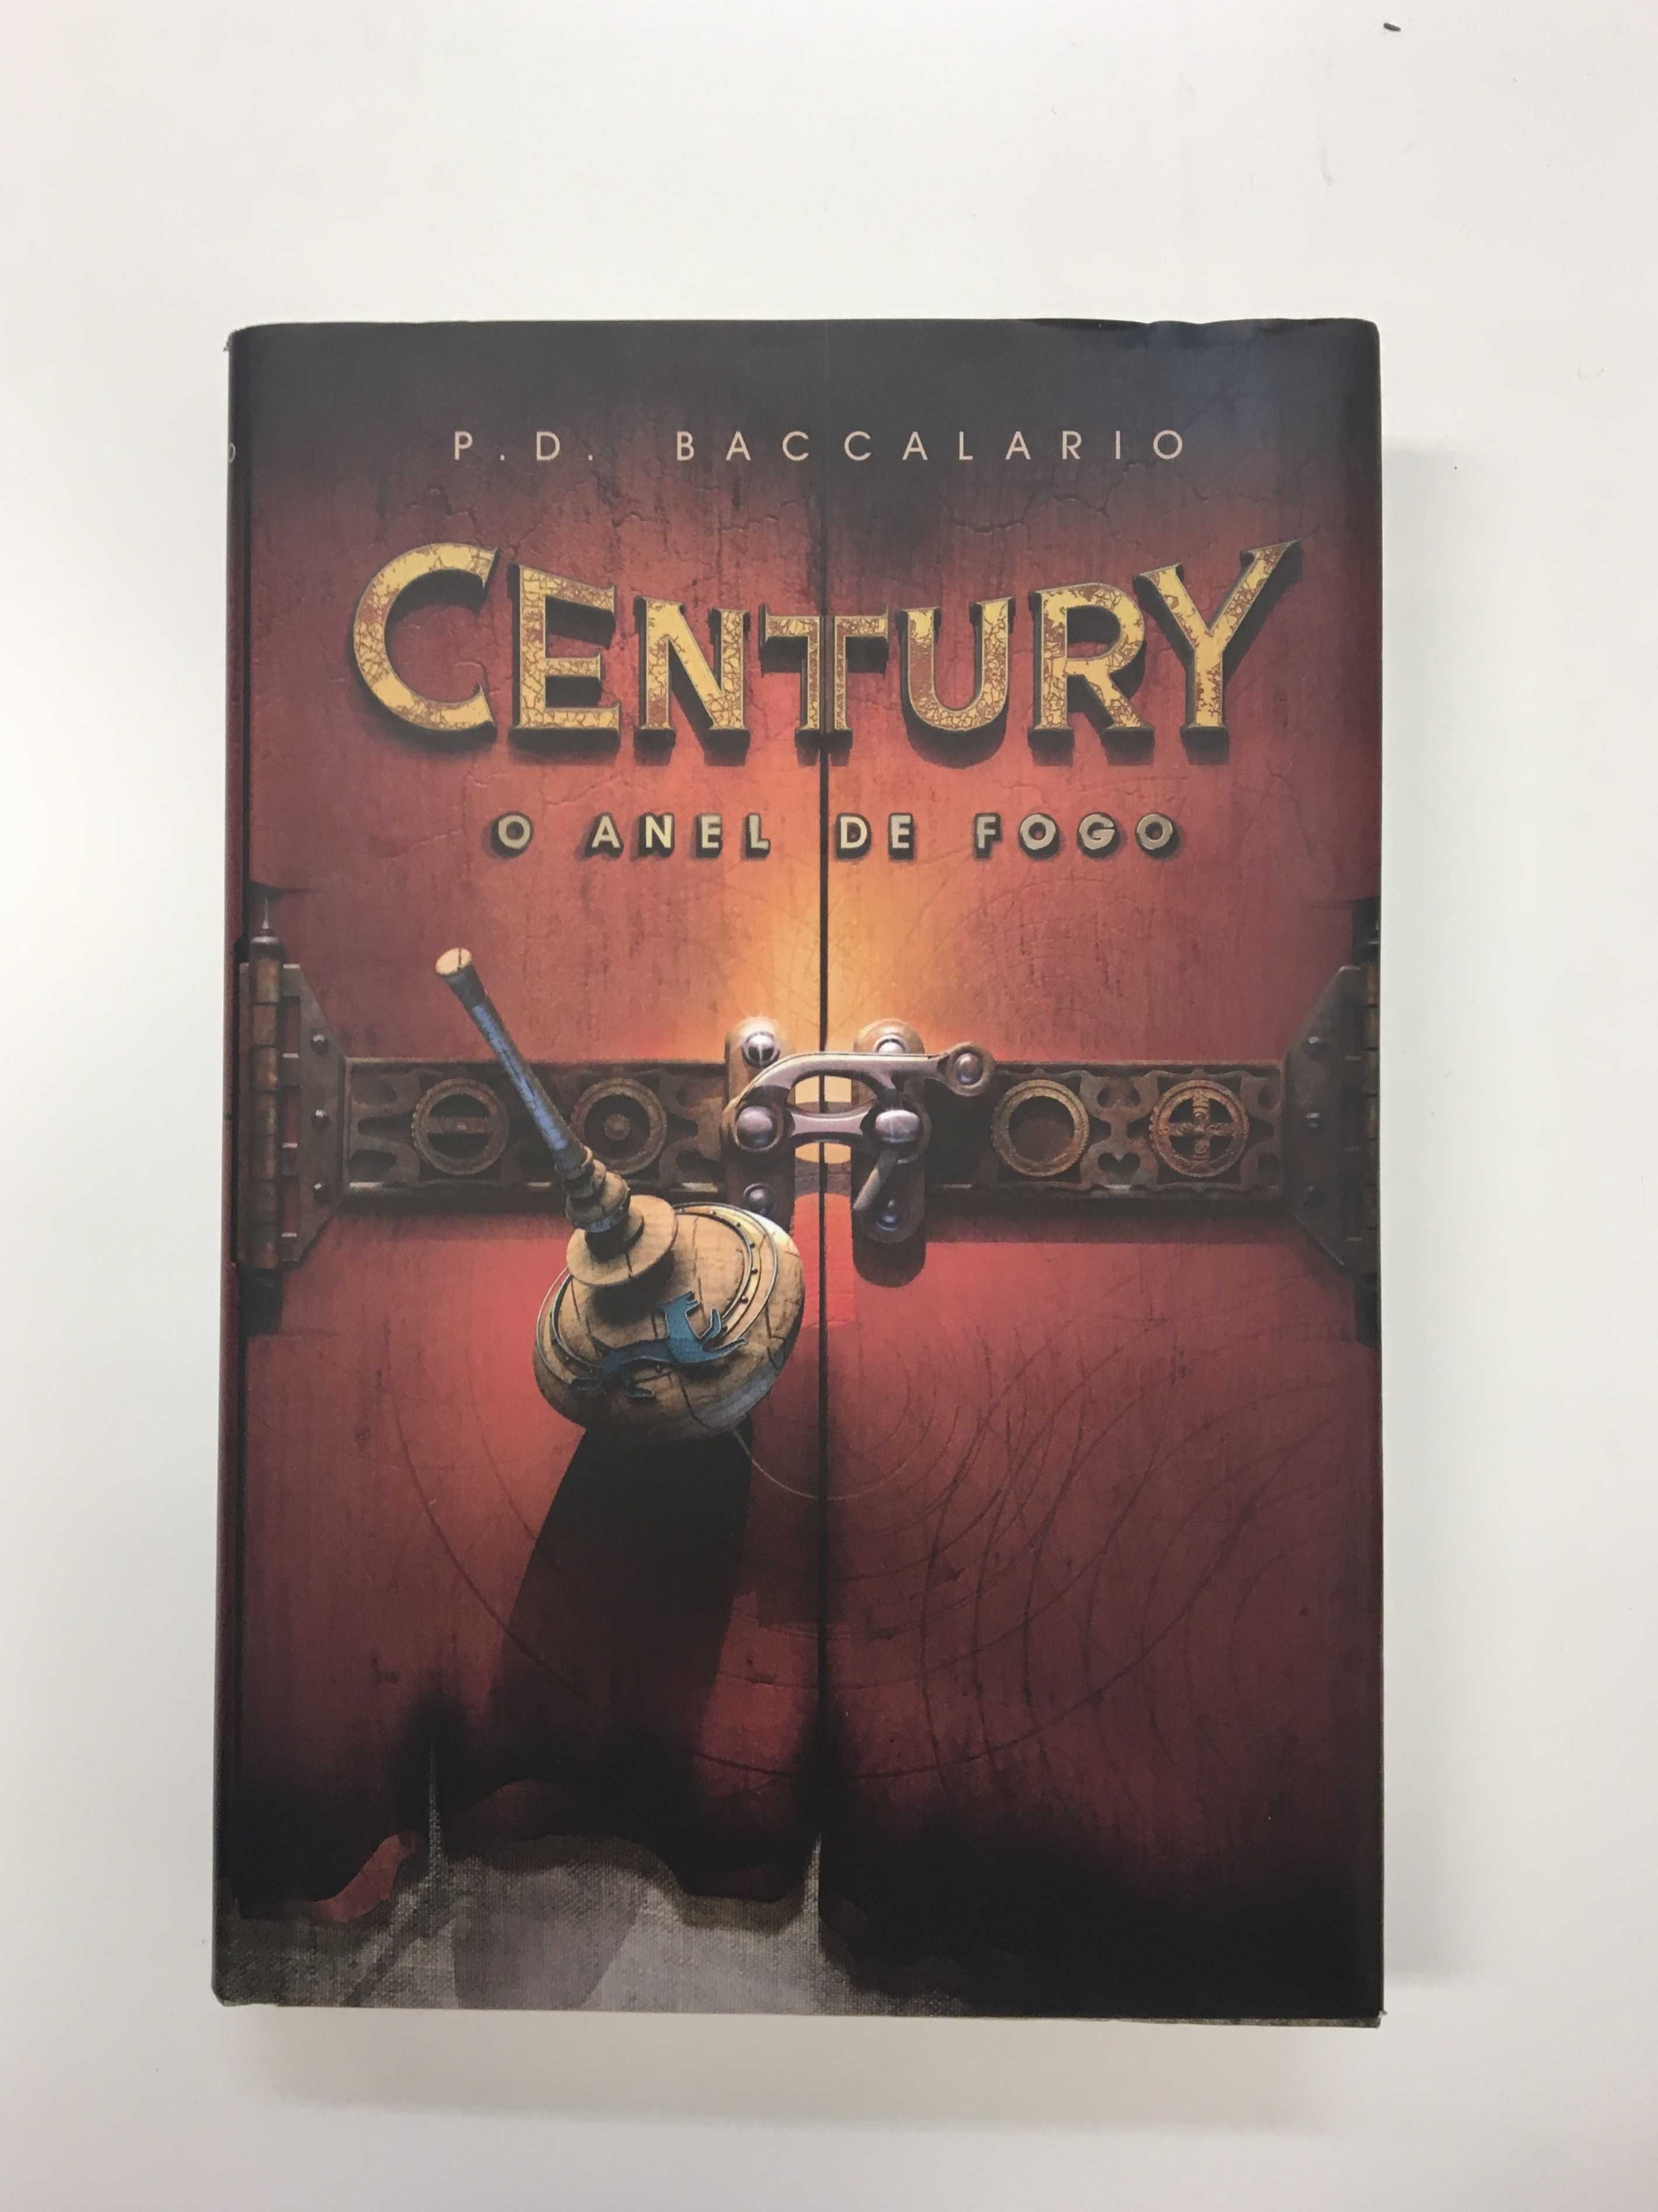 Livro "Century: O Anel de Fogo" de P. D. Baccalario